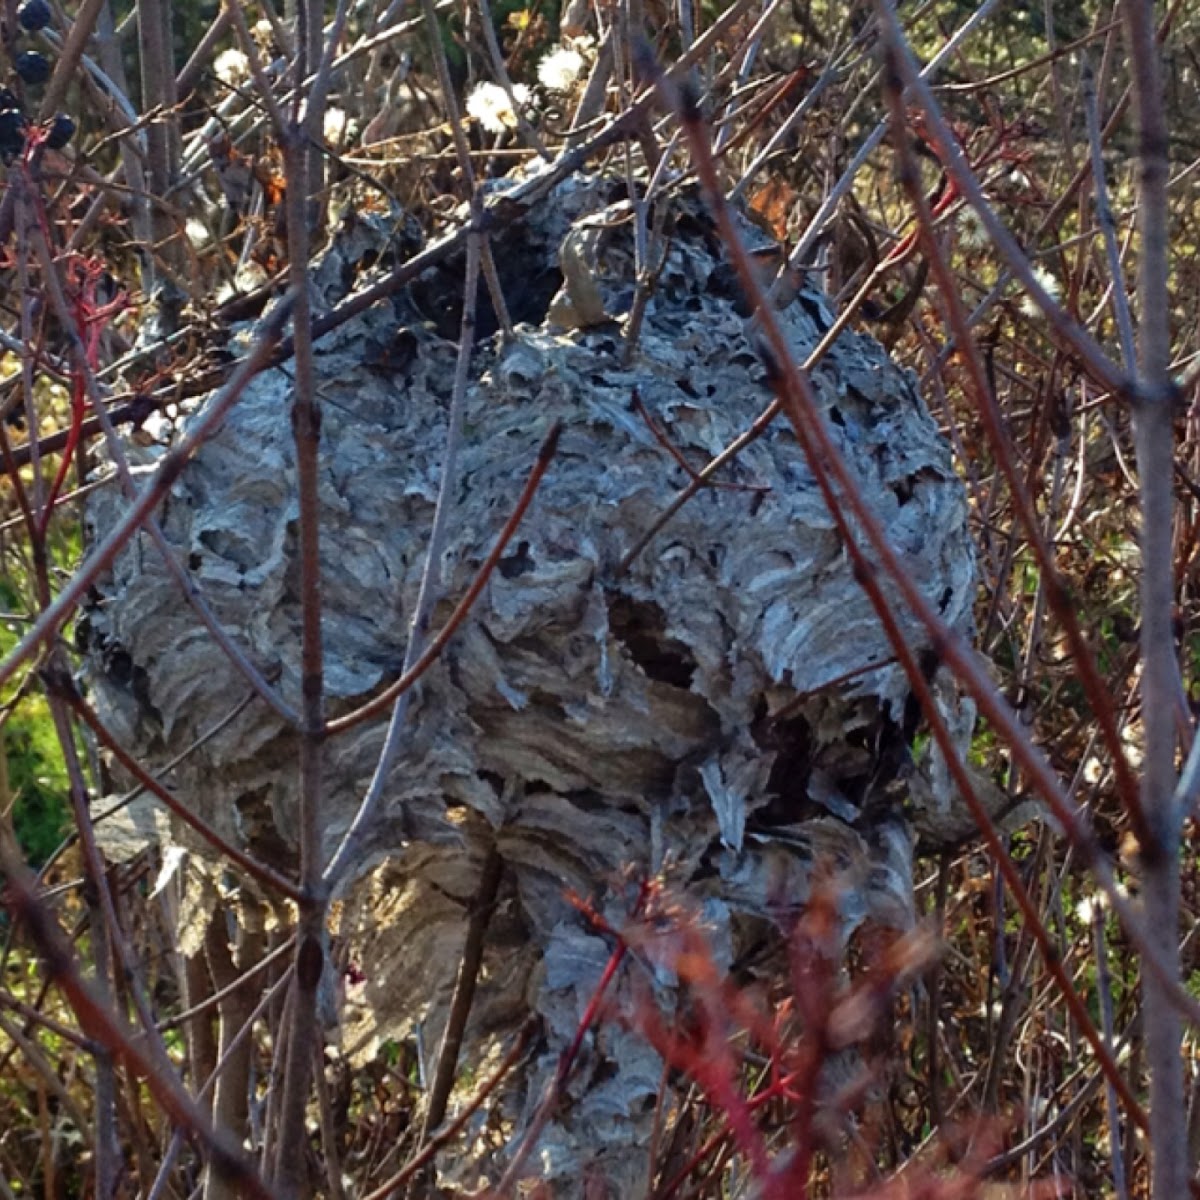 Abandoned hornet nest